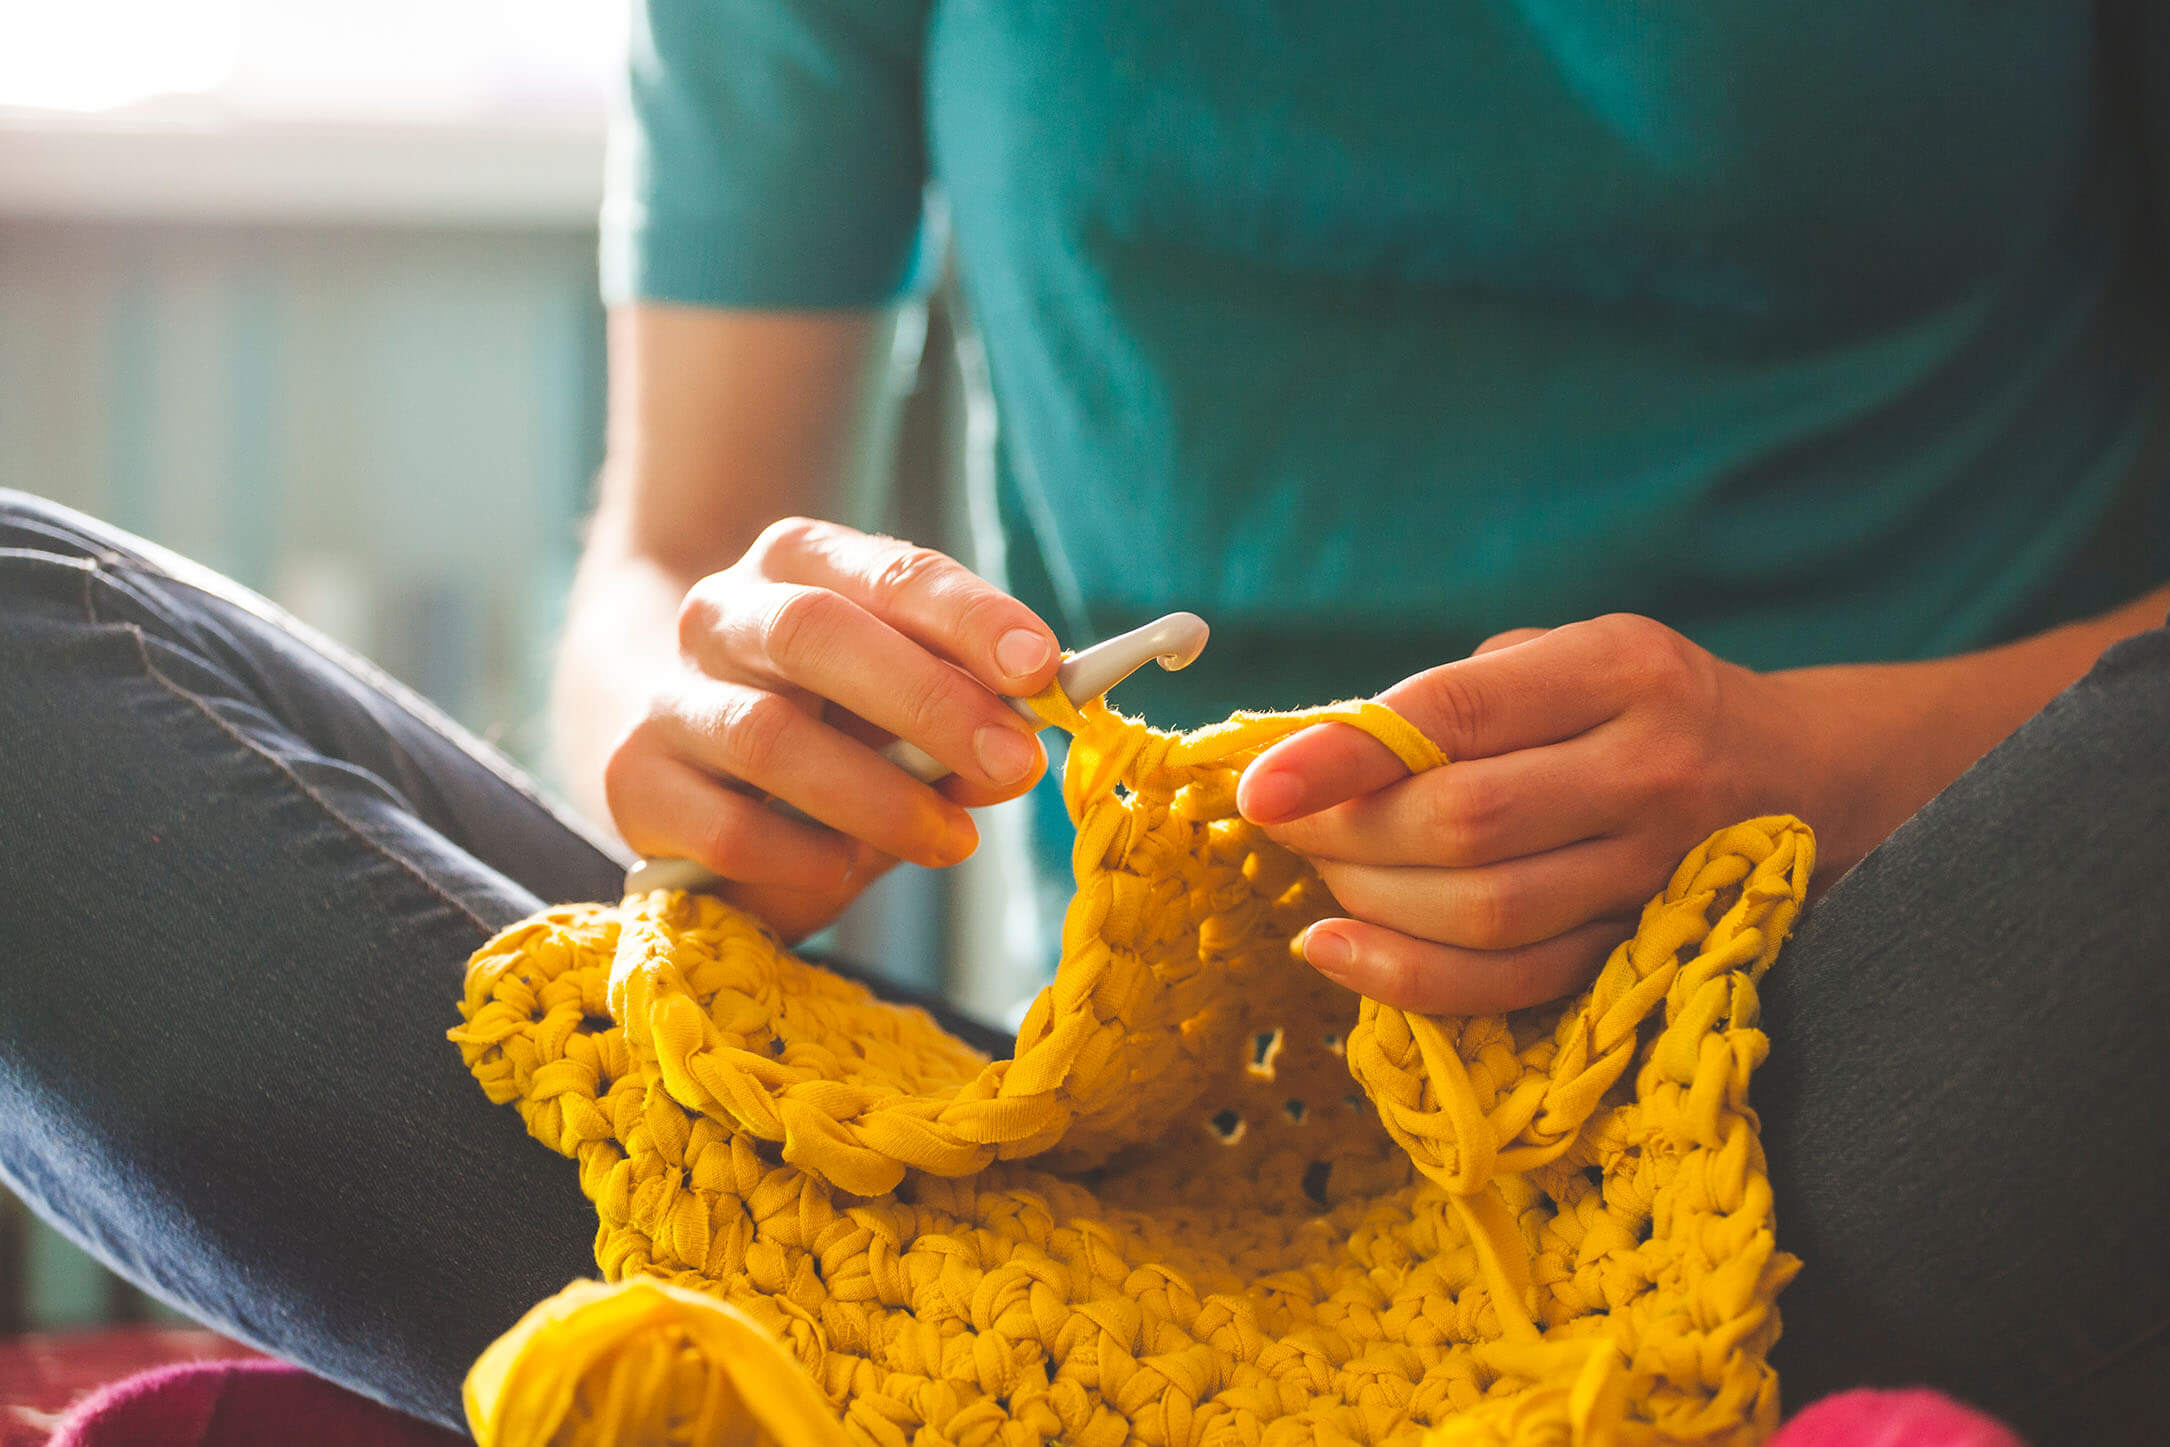 A woman doing crochet